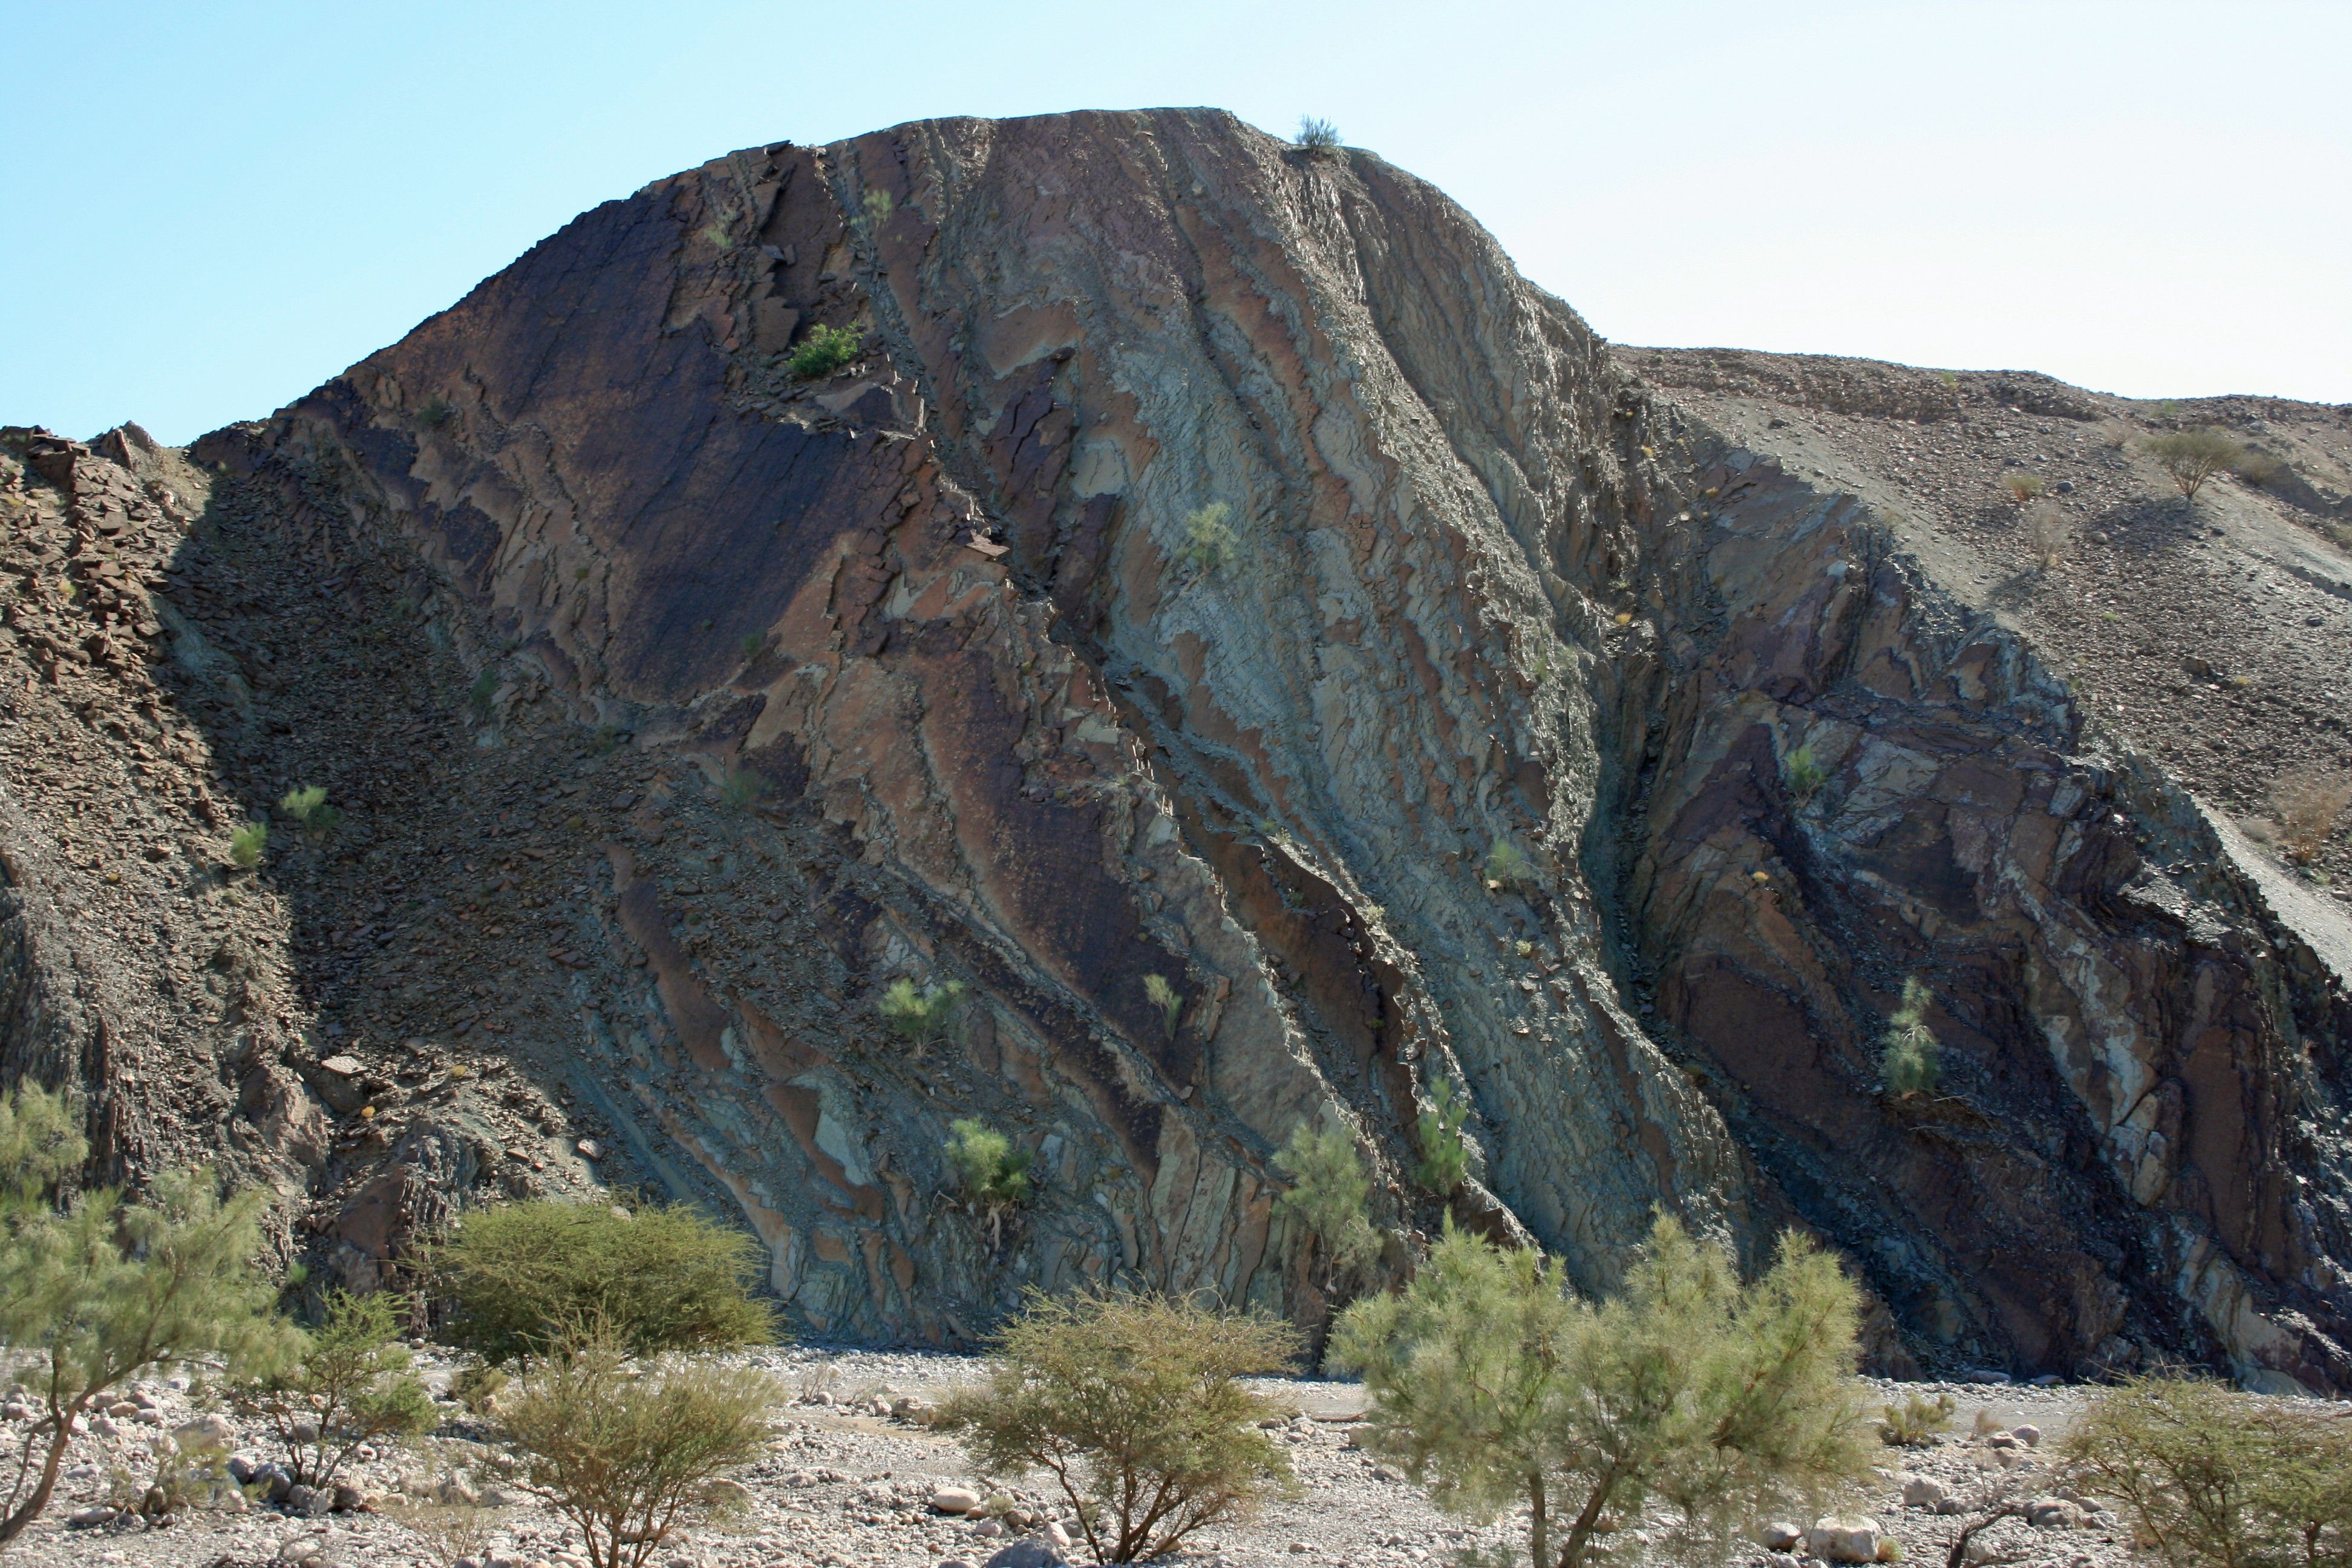 Mountains: Rass Oman Stone Nature Hadd Pass Mountain Rock Near